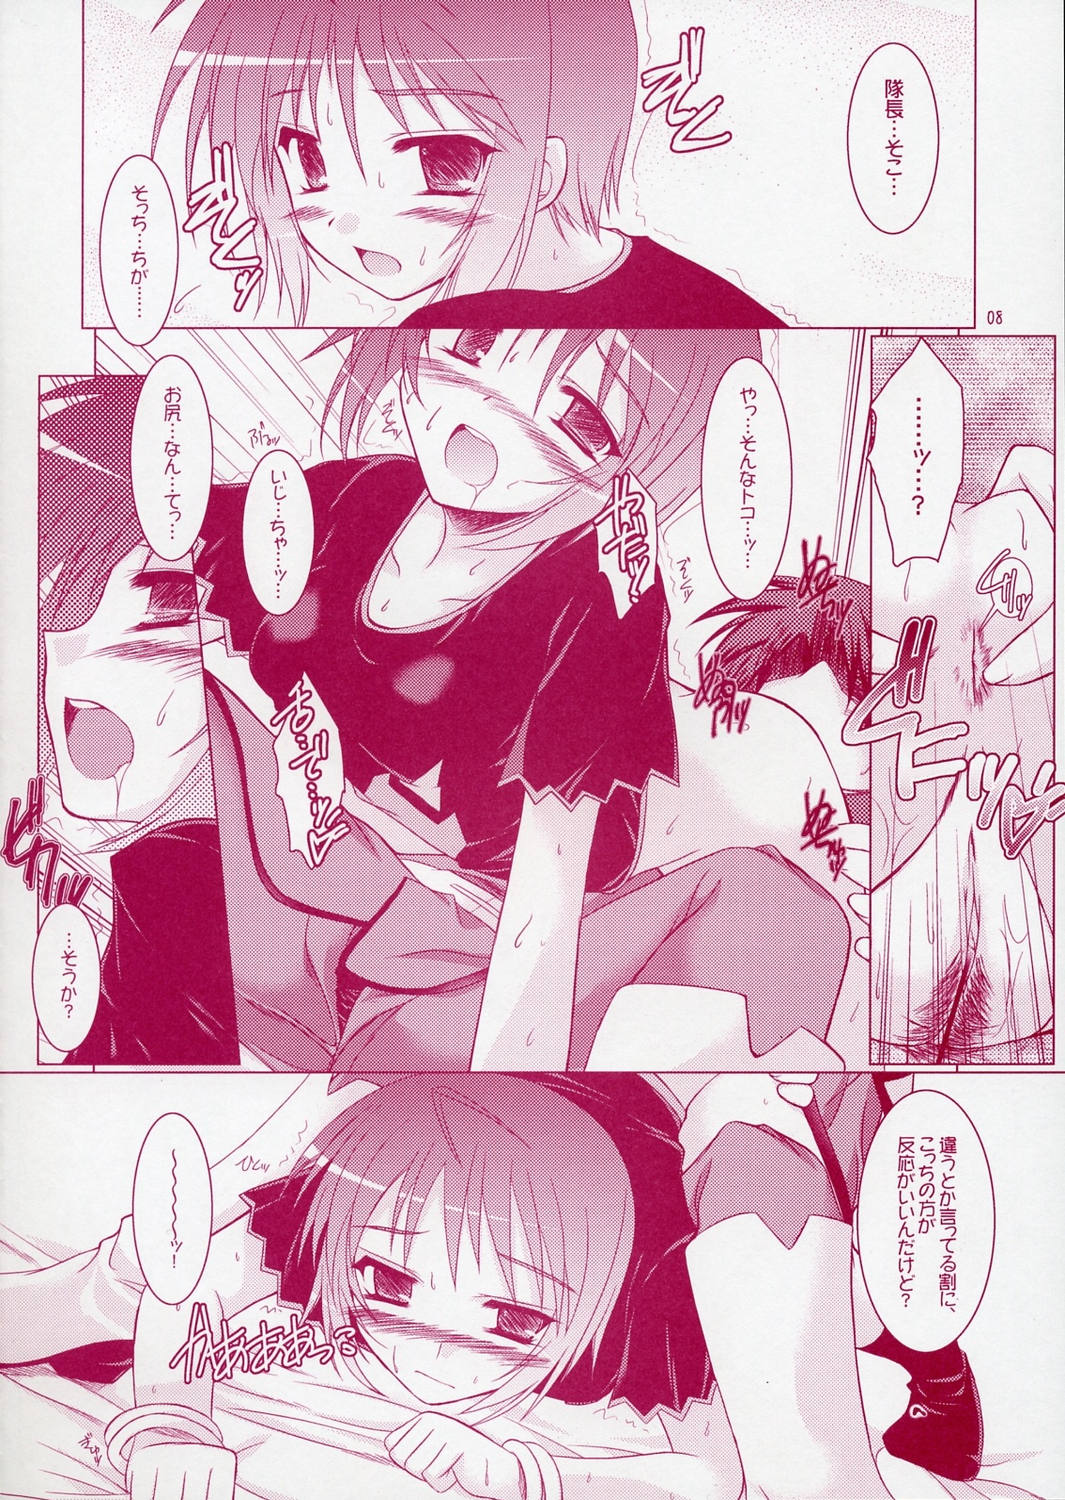 (SC28) [Ponbikiya, Suirankaku (Ibuki Pon)] REDDISH PURPLE-02B (Gundam Seed Destiny) page 7 full